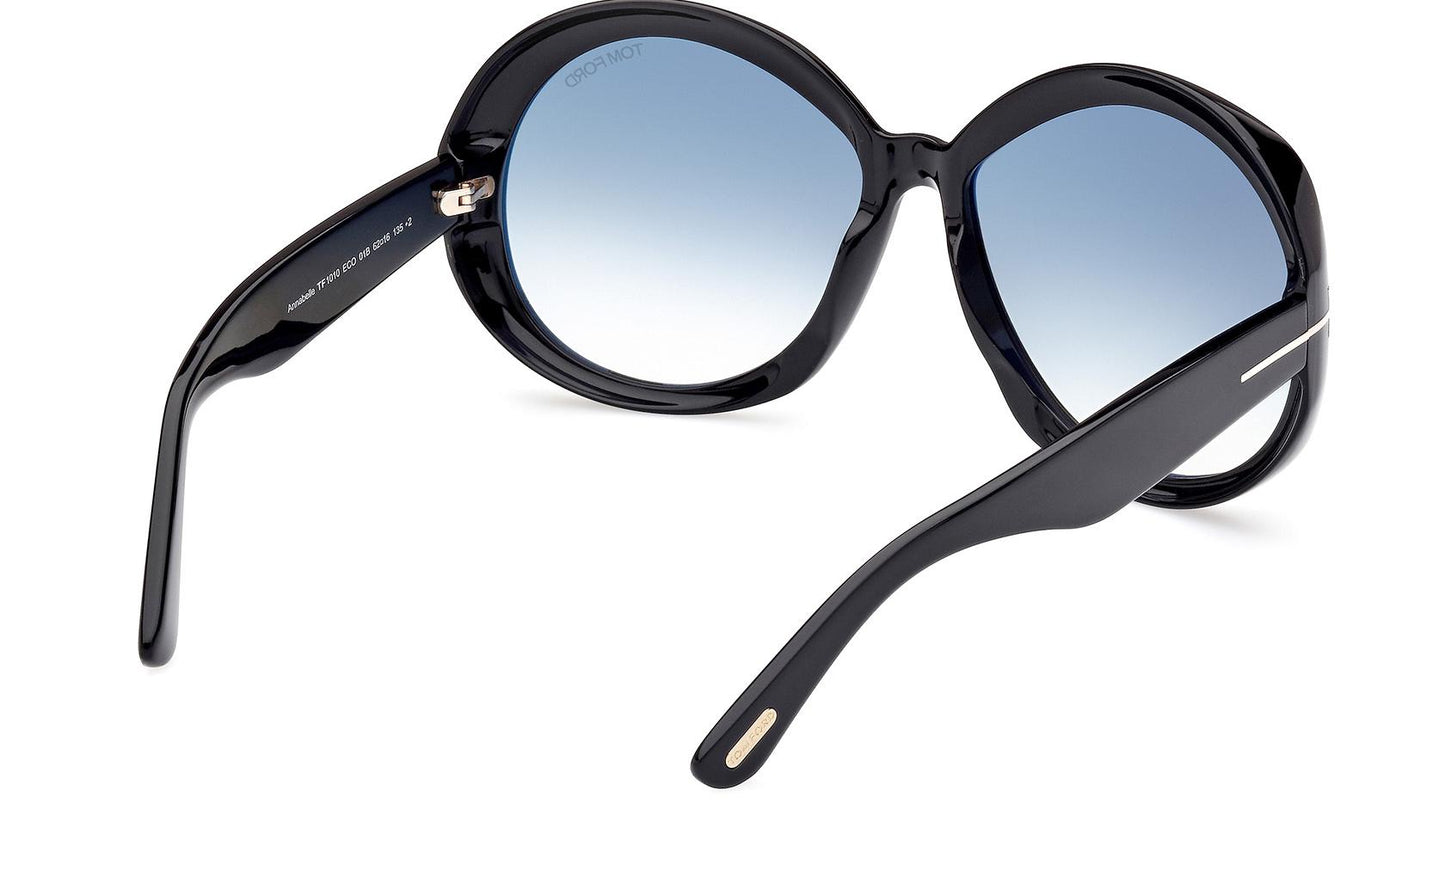 Tom Ford Annabelle Sunglasses FT1010 01B